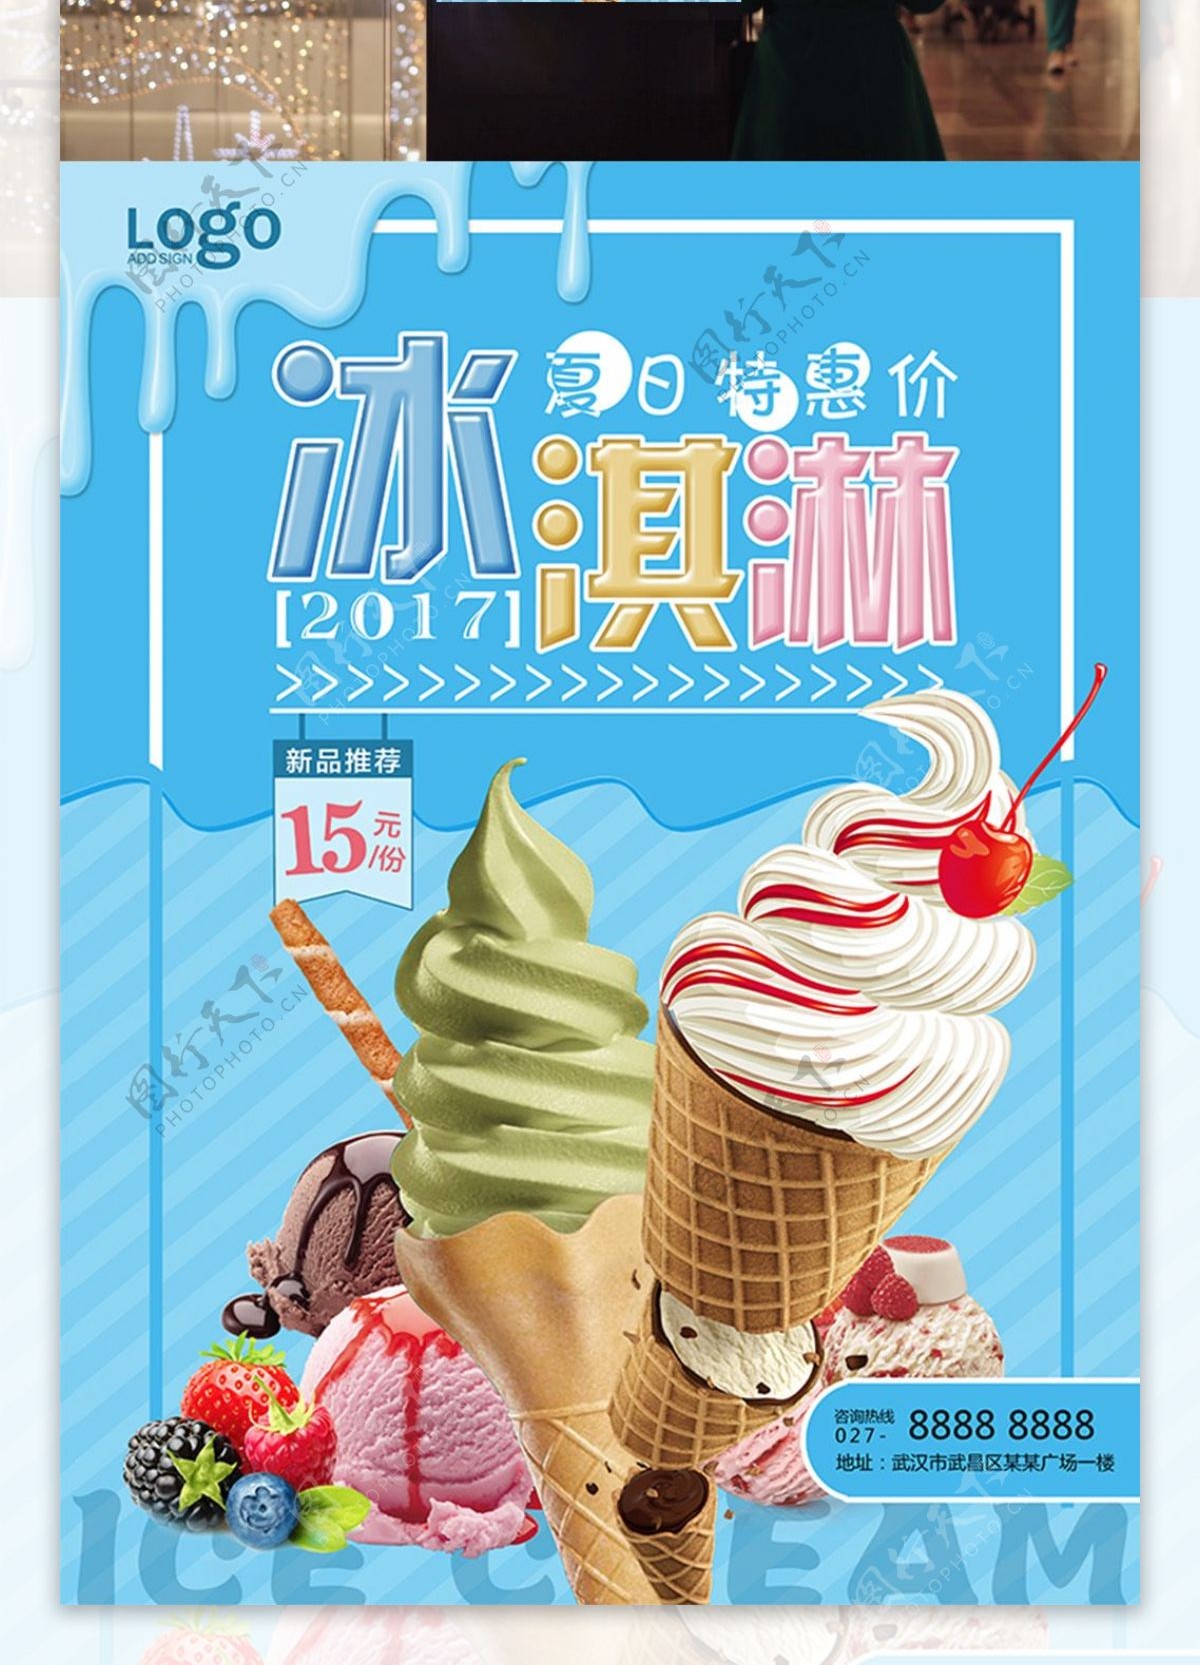 彩色甜美冰淇淋促销海报